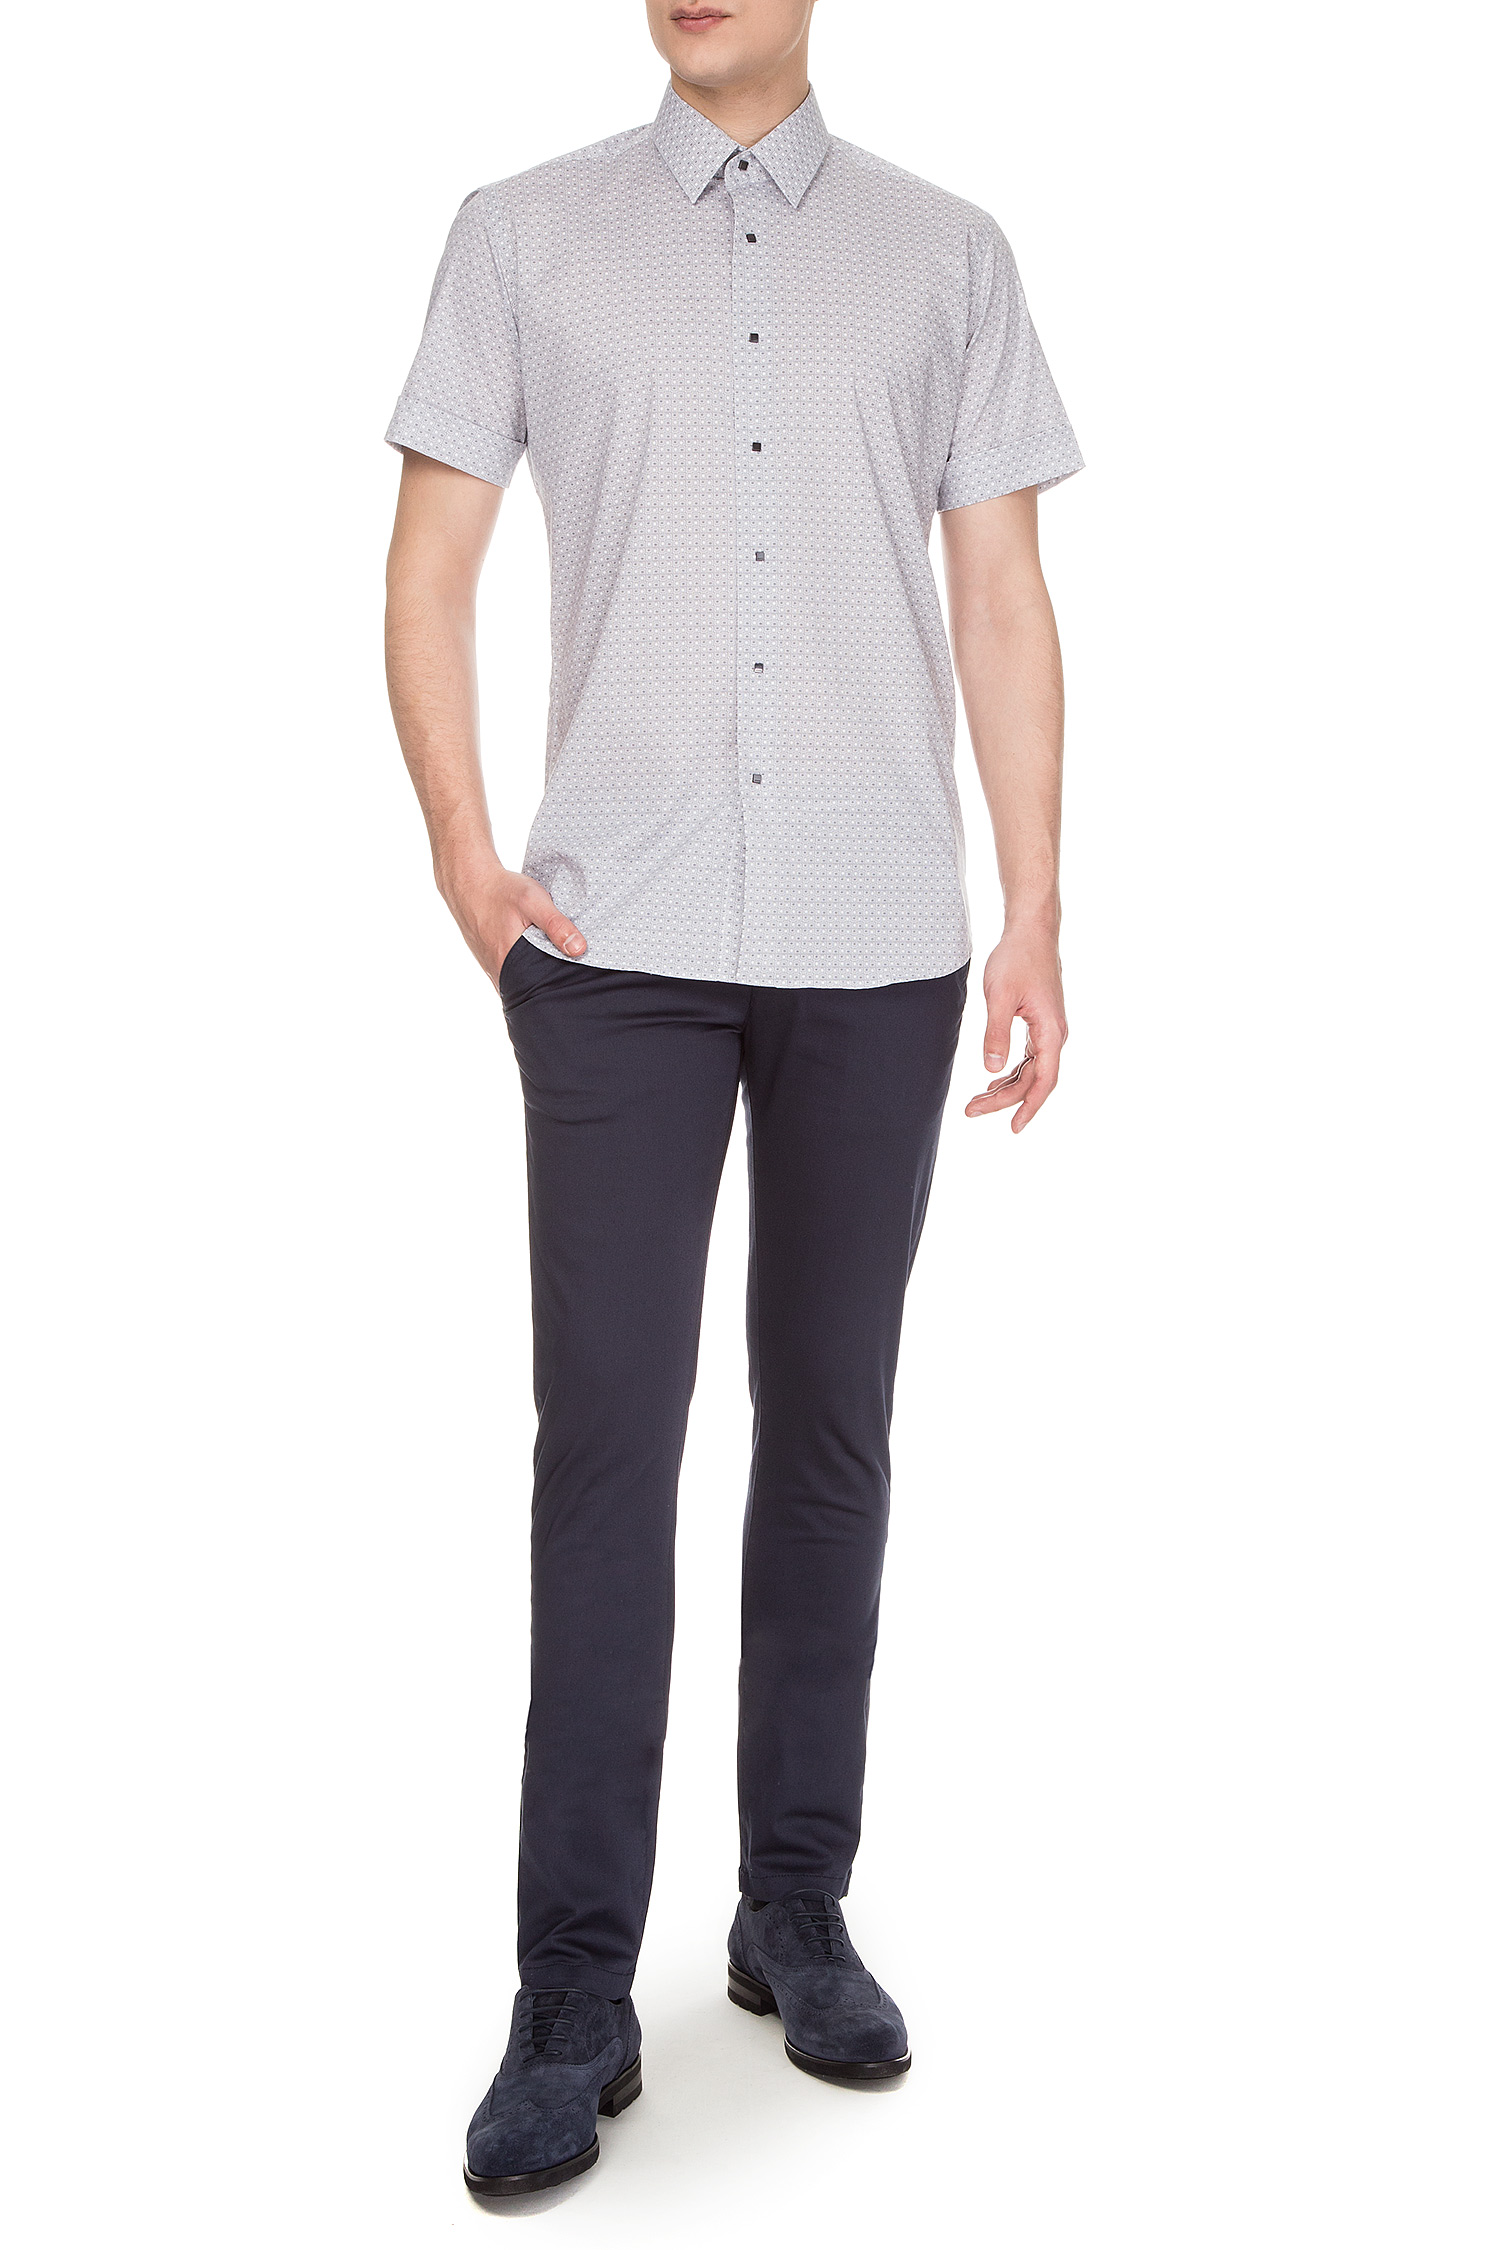 Мужская серая рубашка Slim Fit Karl Lagerfeld 681612.606500;900